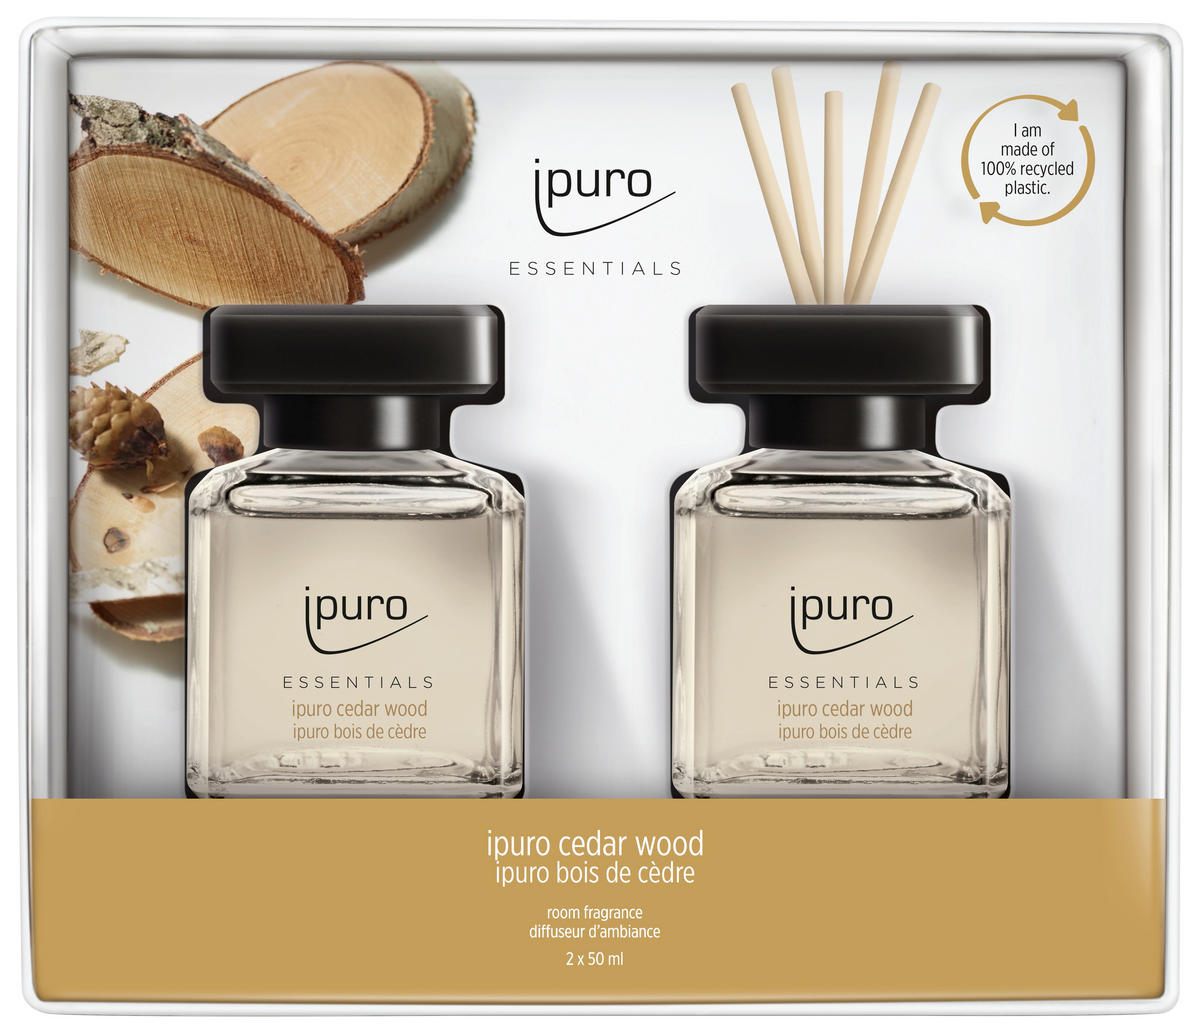 Diffuseur de parfum Ipuro TIME FOR PARTY 50ML